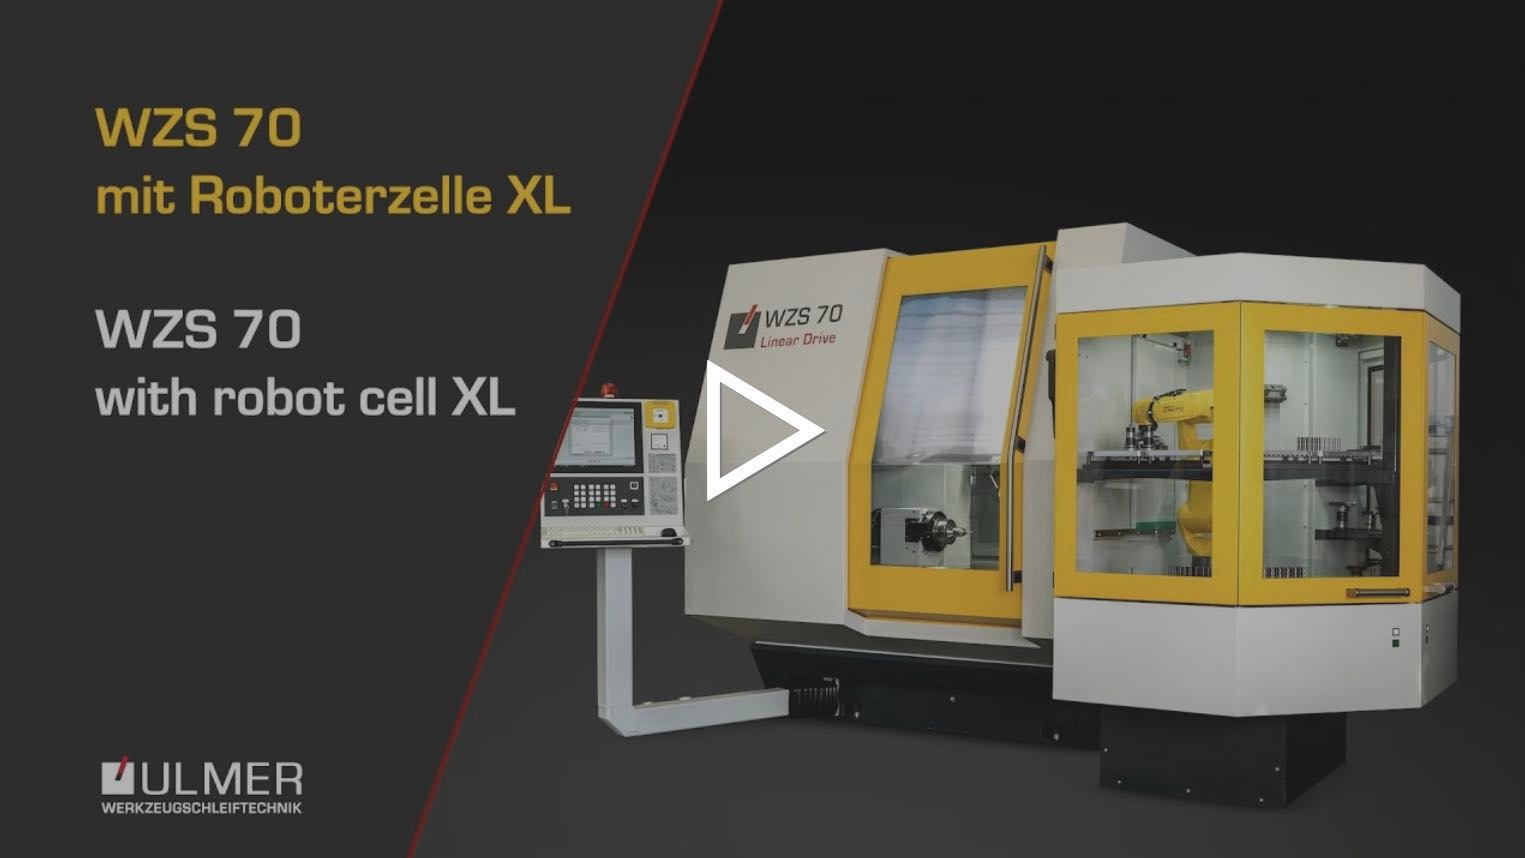 Das Video zeigt die WZS Maschine mit der Roboterzelle XL